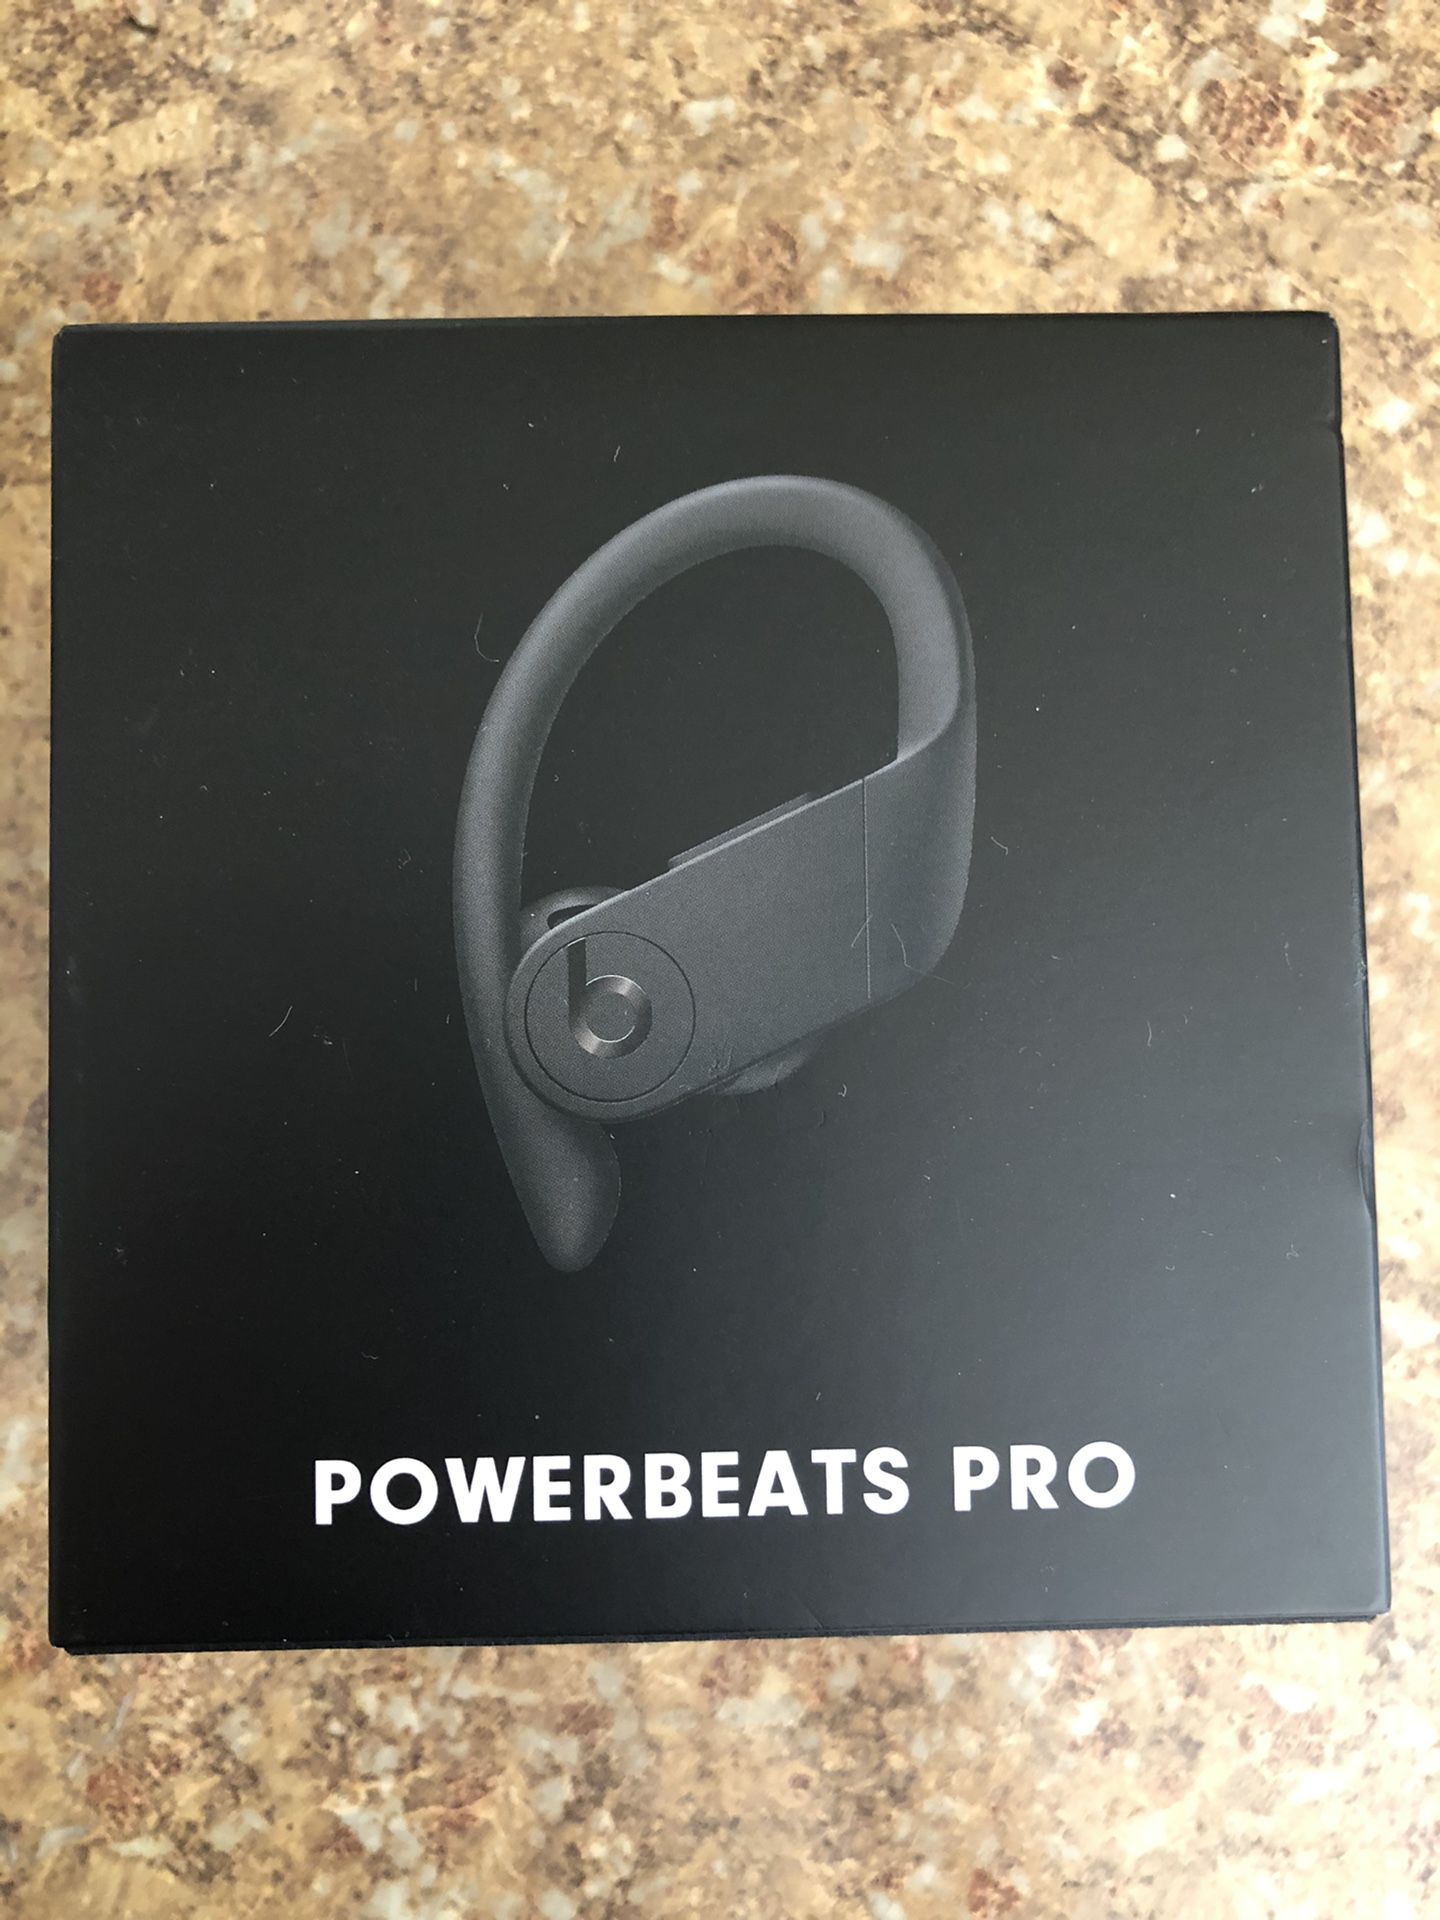 2019 Latest POWERBEATS PRO Apple Wireless In Ear Earphones Beats By Dre -Black used like new— 💯 authentic beats guaranteed